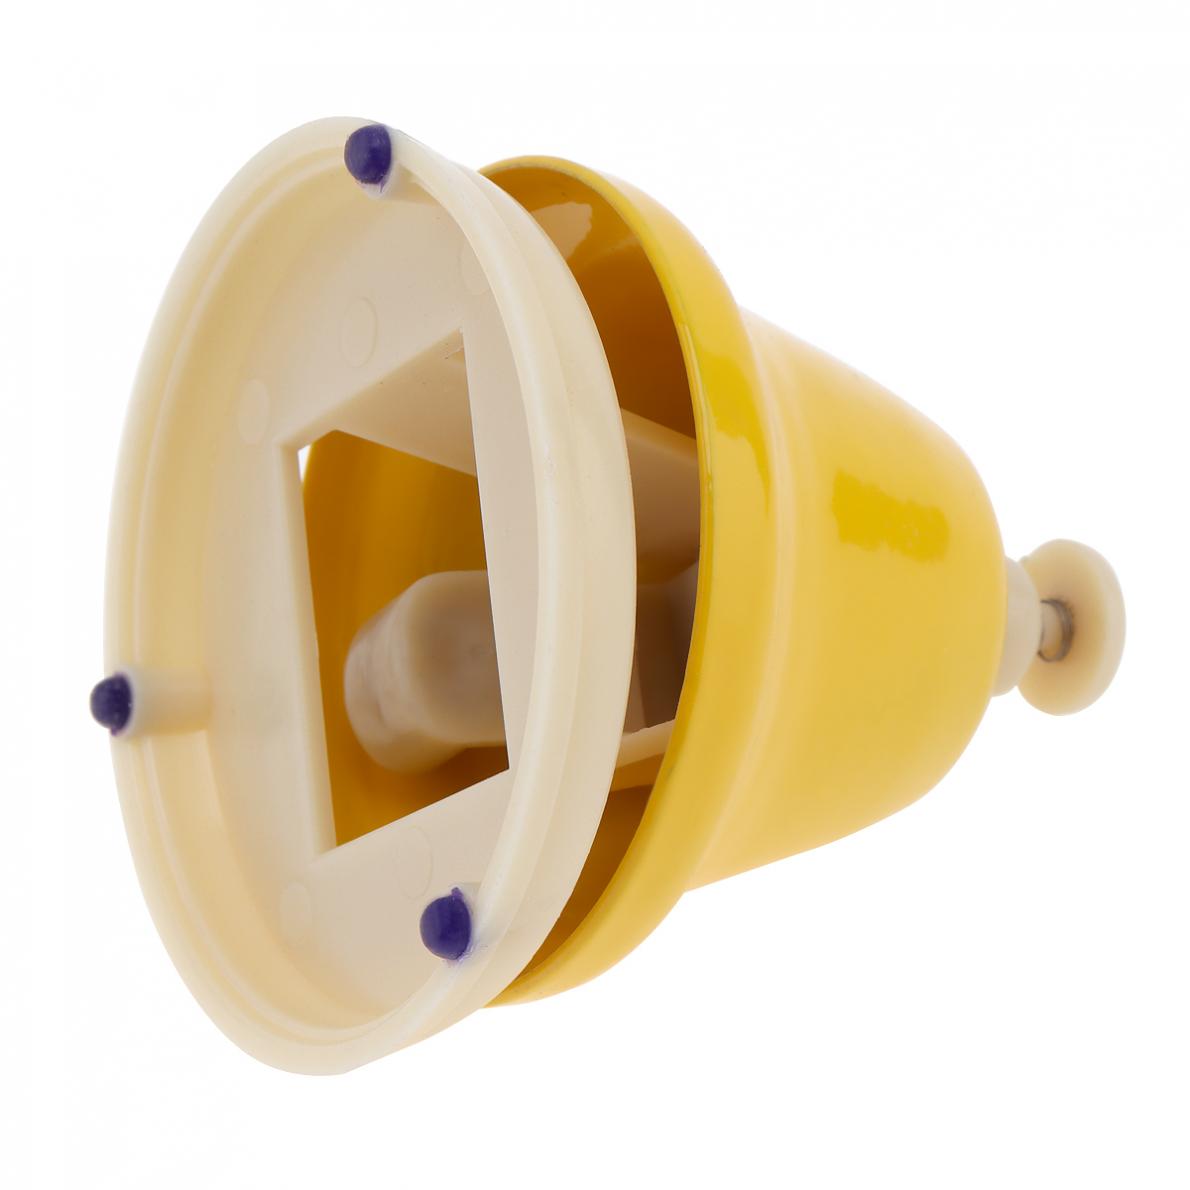 8 stk farverigt håndklokkesæt musikinstrument musiklegetøj til børn baby tidlig uddannelse håndklokke